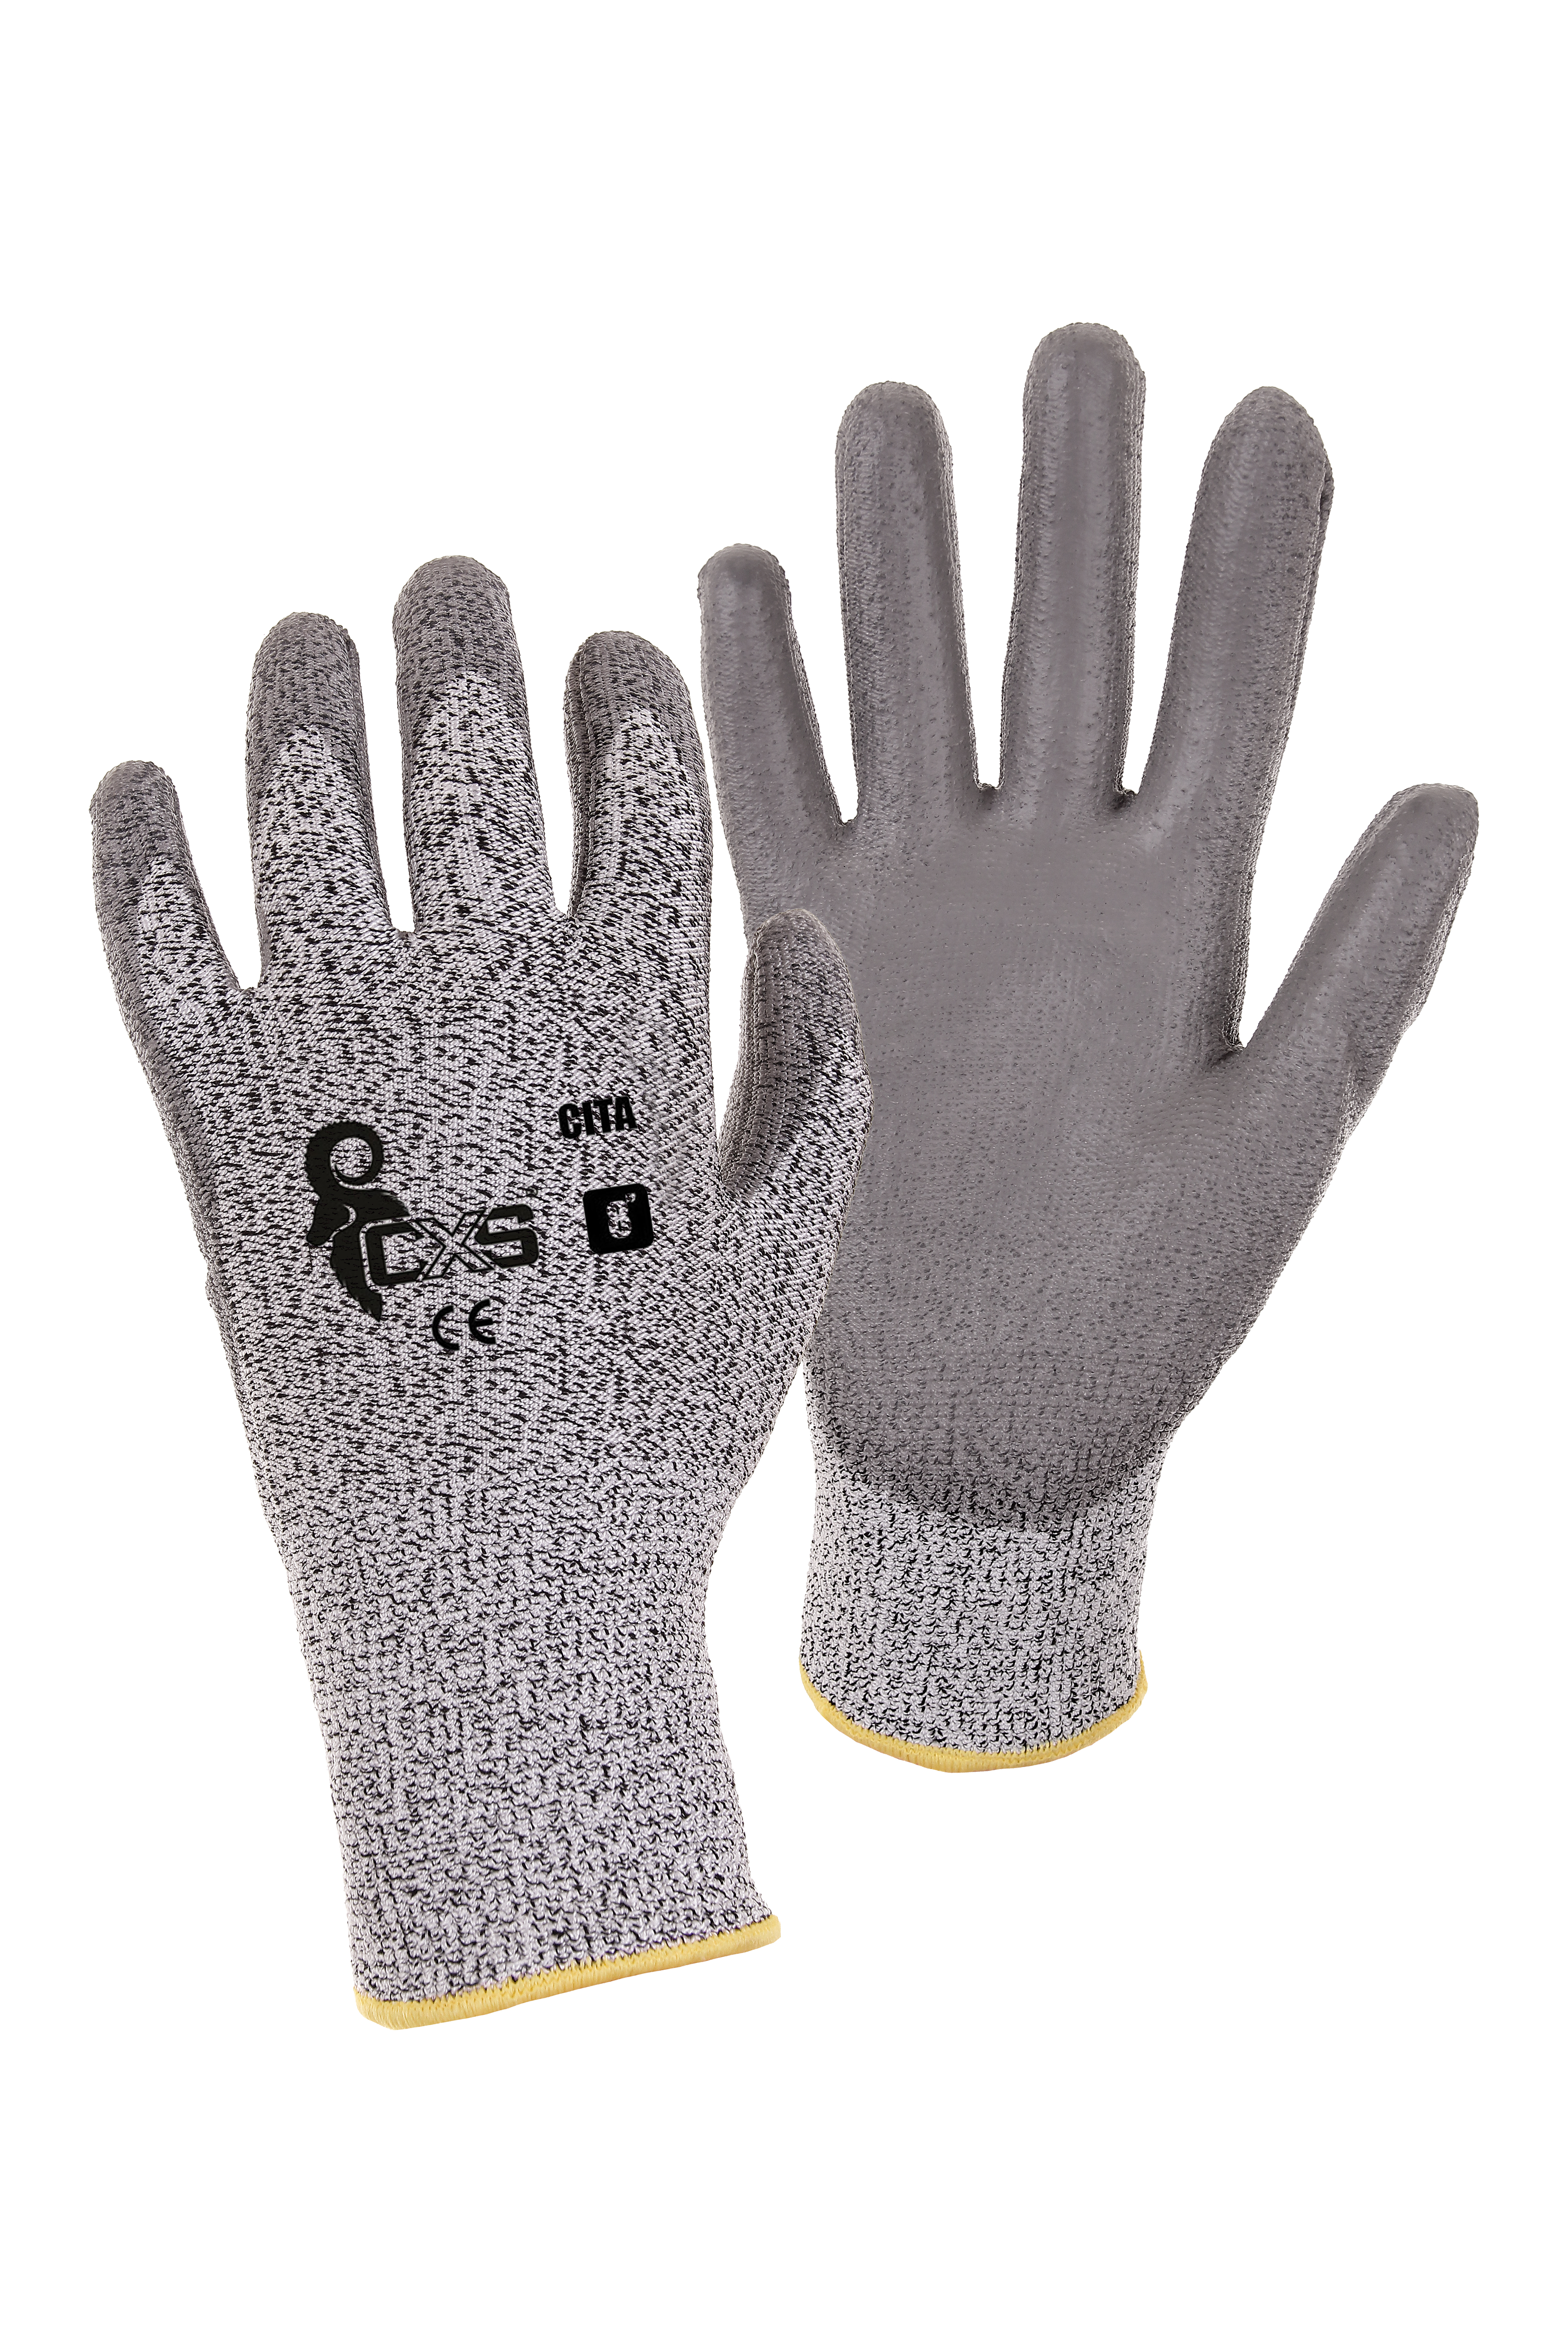 rukavice CITA, protipořezové, šedé, velikost 11 0.06 Kg TOP Sklad4 606061 63